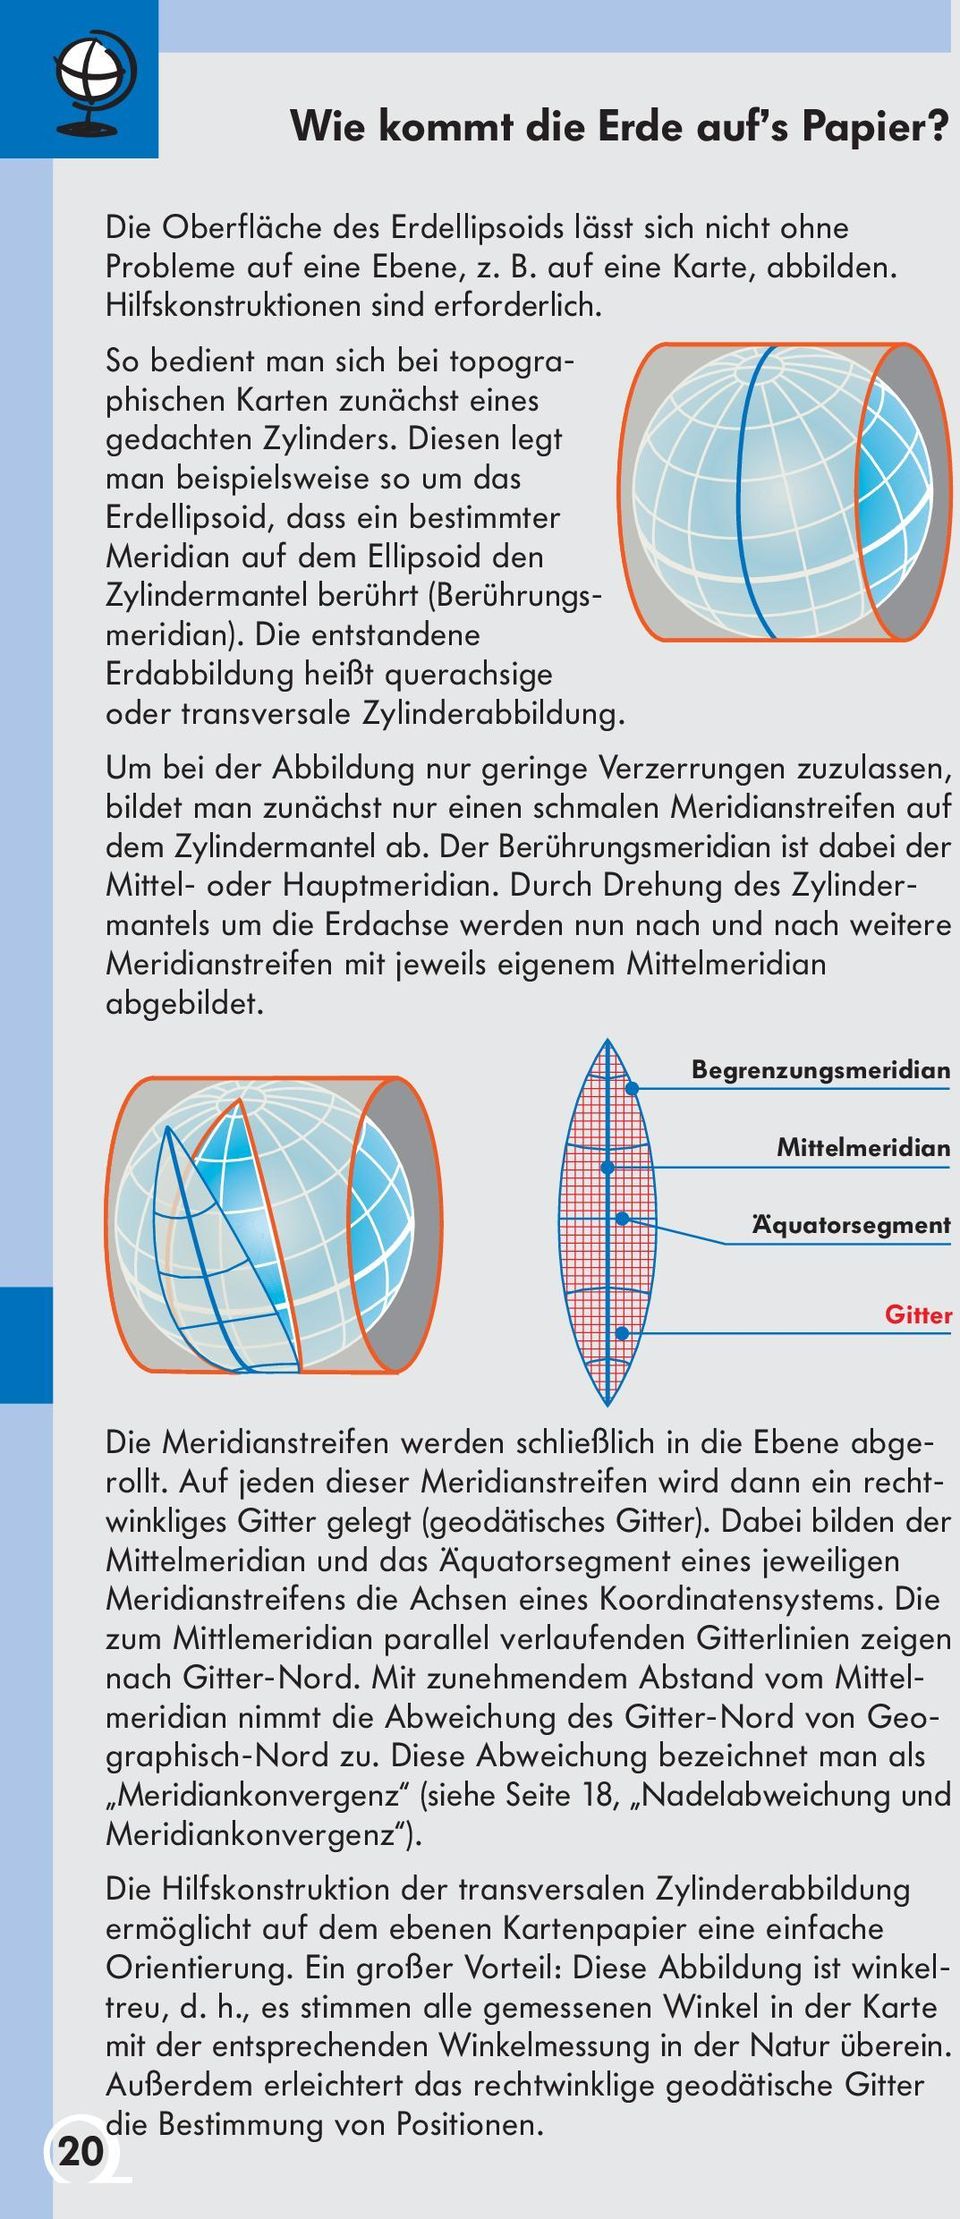 Diesen legt man beispielsweise so um das Erdellipsoid, dass ein bestimmter Meridian auf dem Ellipsoid den Zylindermantel berührt (Berührungsmeridian).